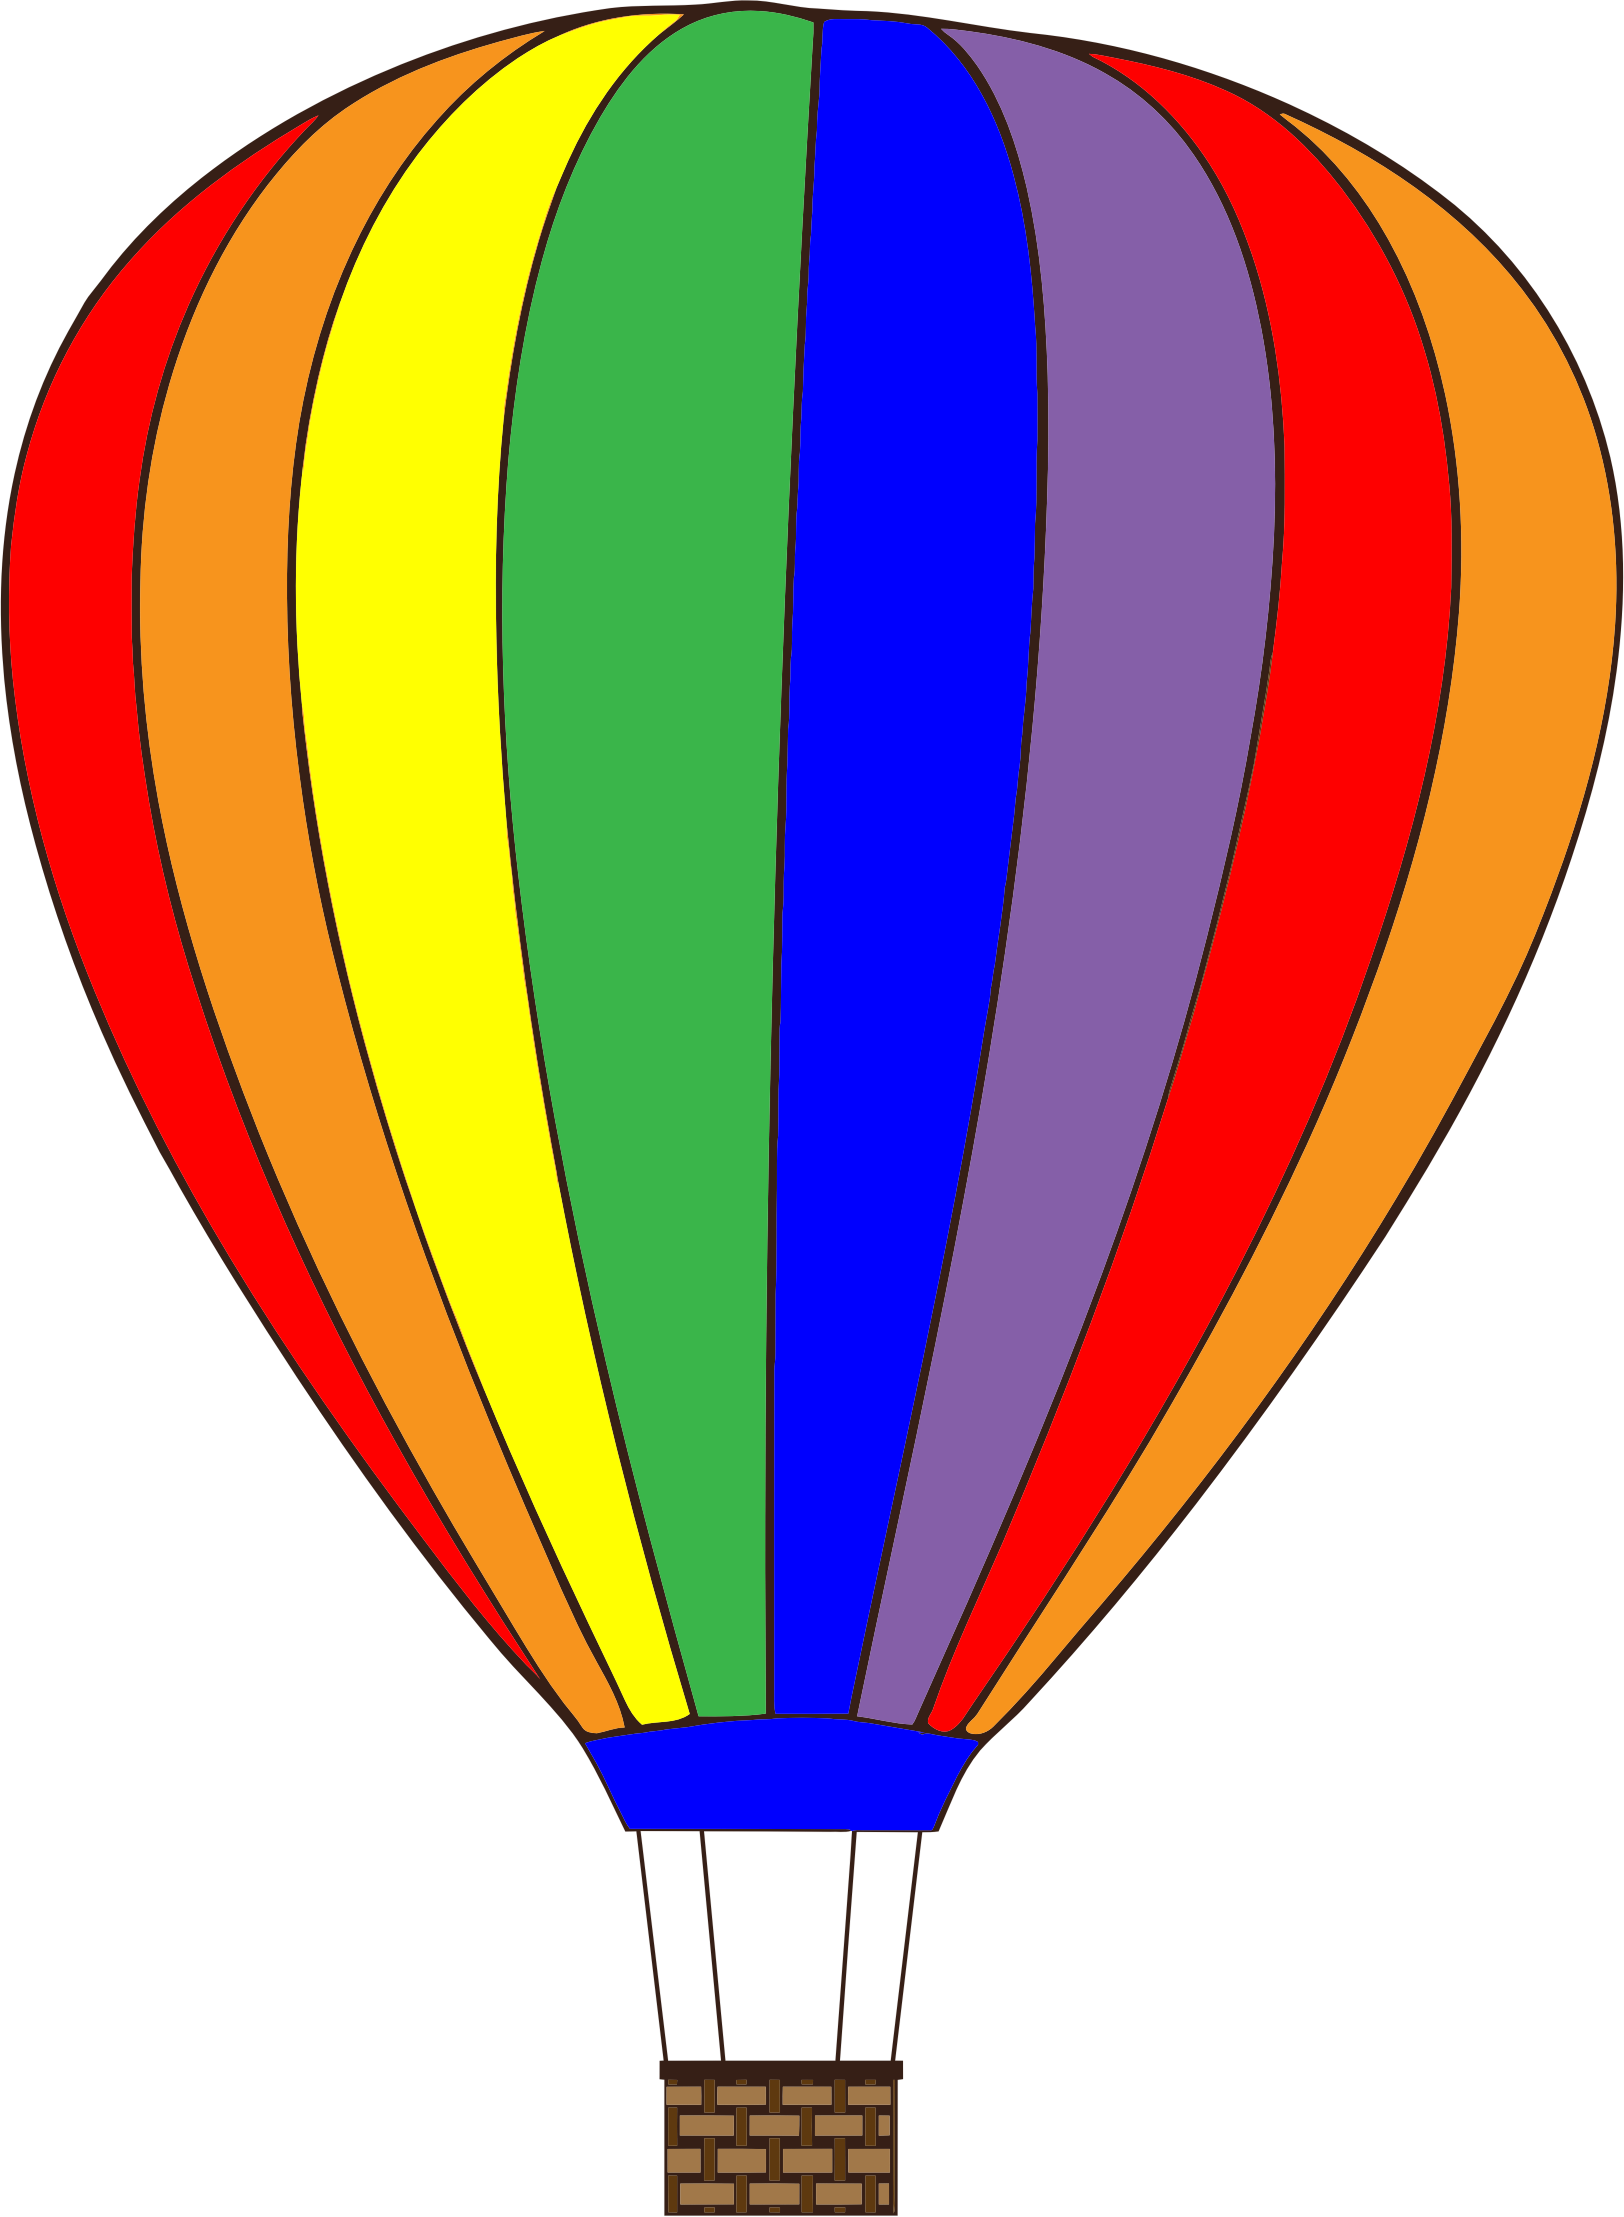 Clipart - Colorful Hot Air Balloon